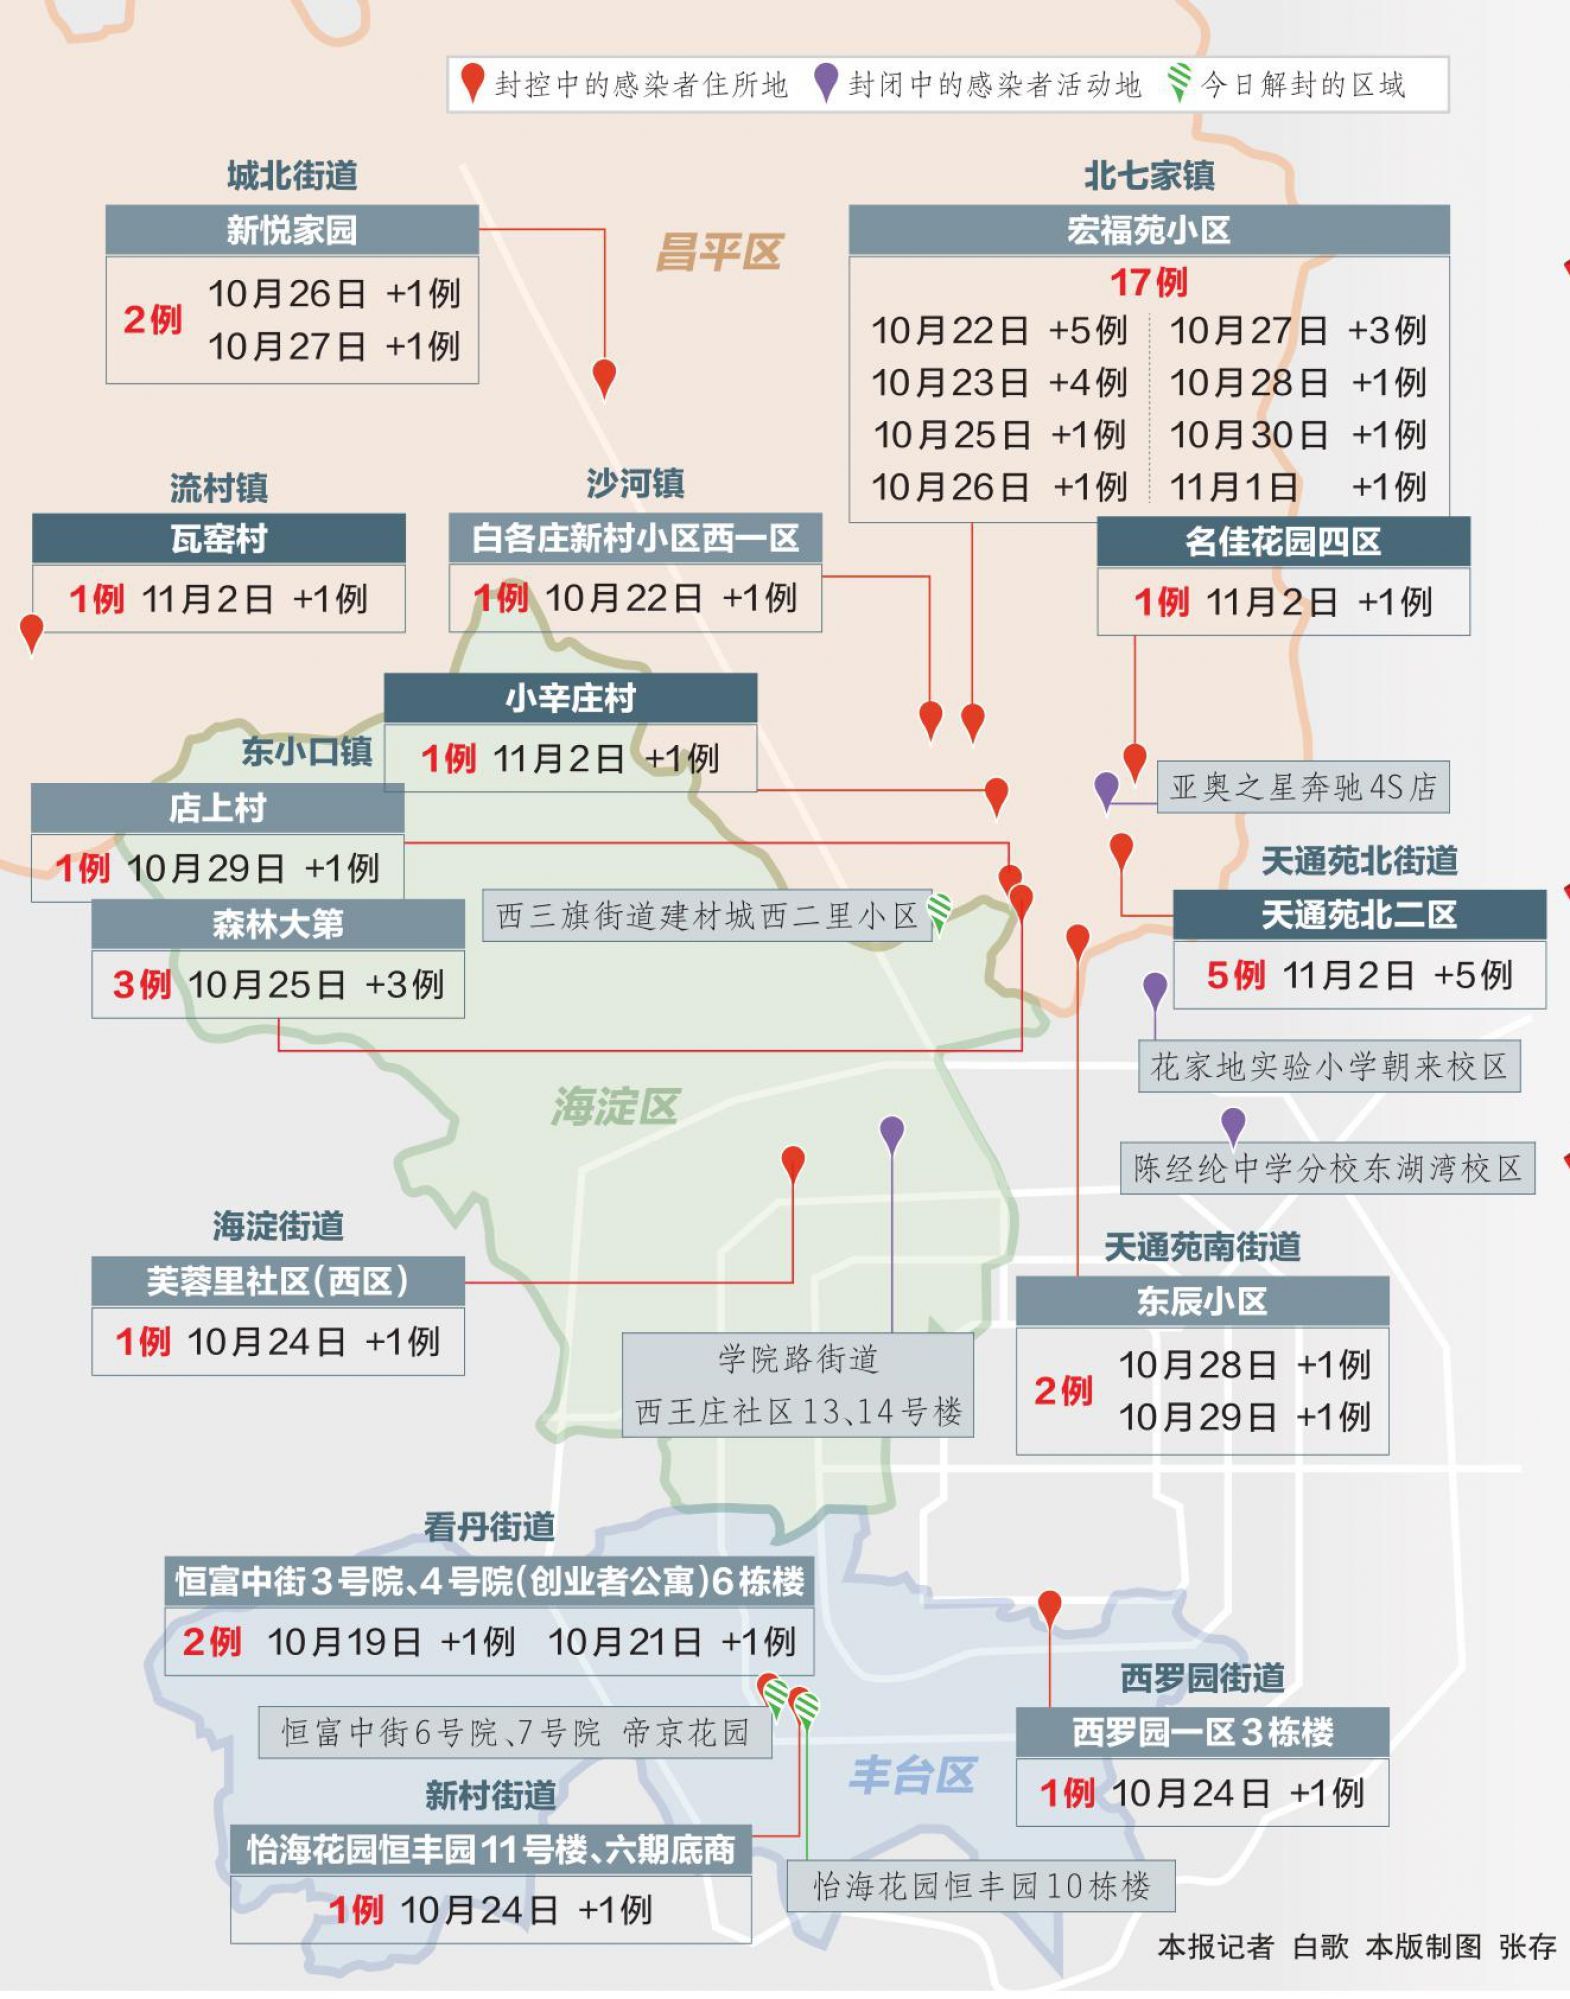 本轮疫情北京累计报告39例感染者 这些区域仍在封闭管理